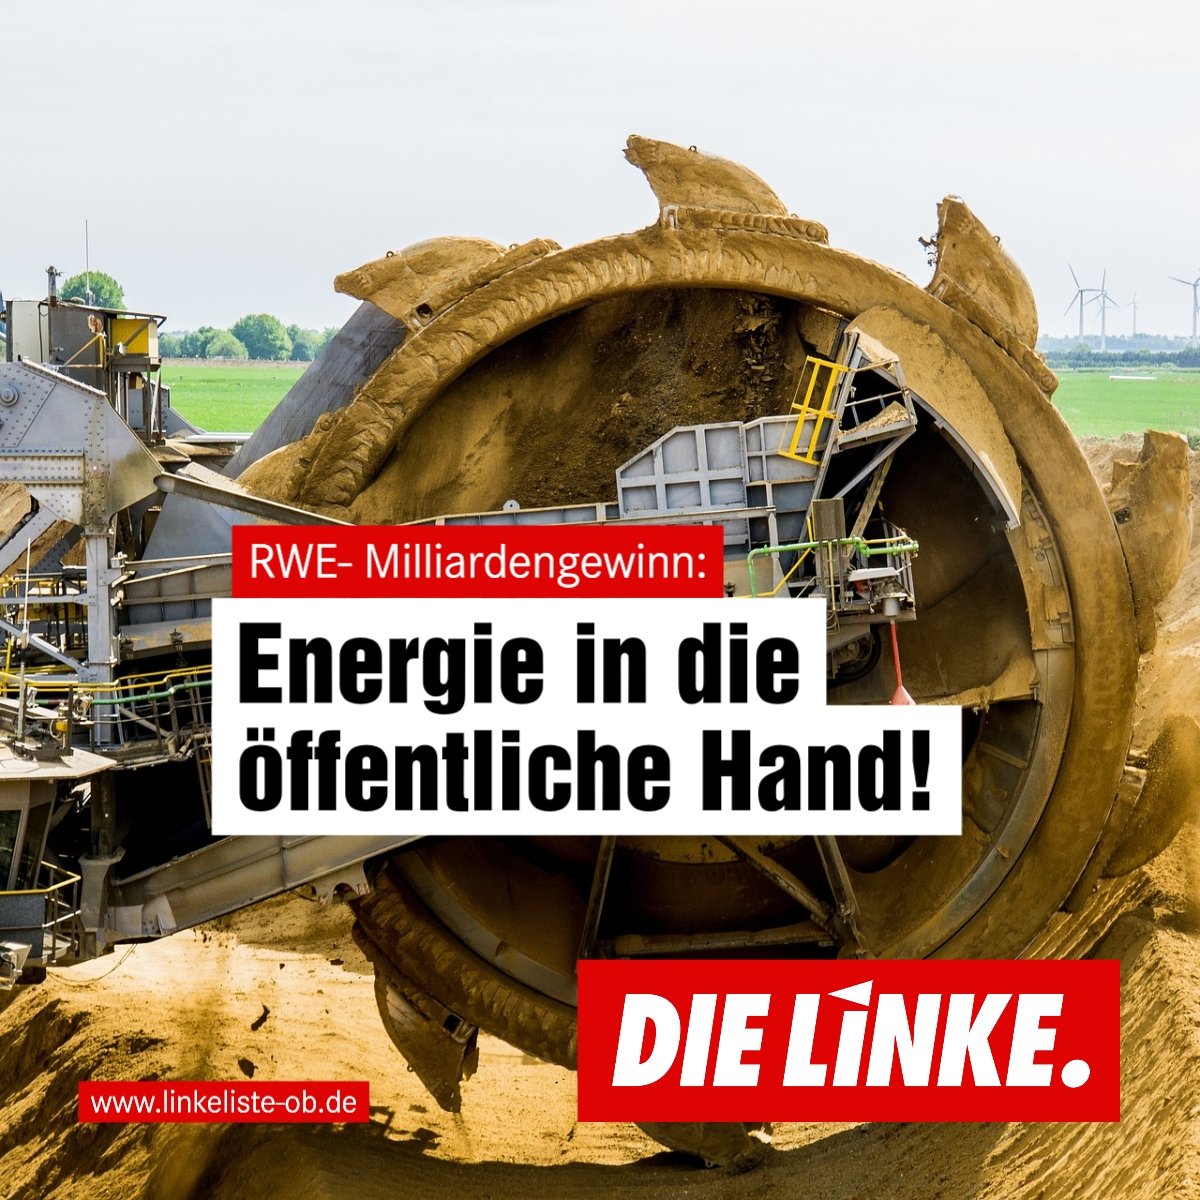 RWE-Milliardengewinn: Energie in die öffentliche Hand!